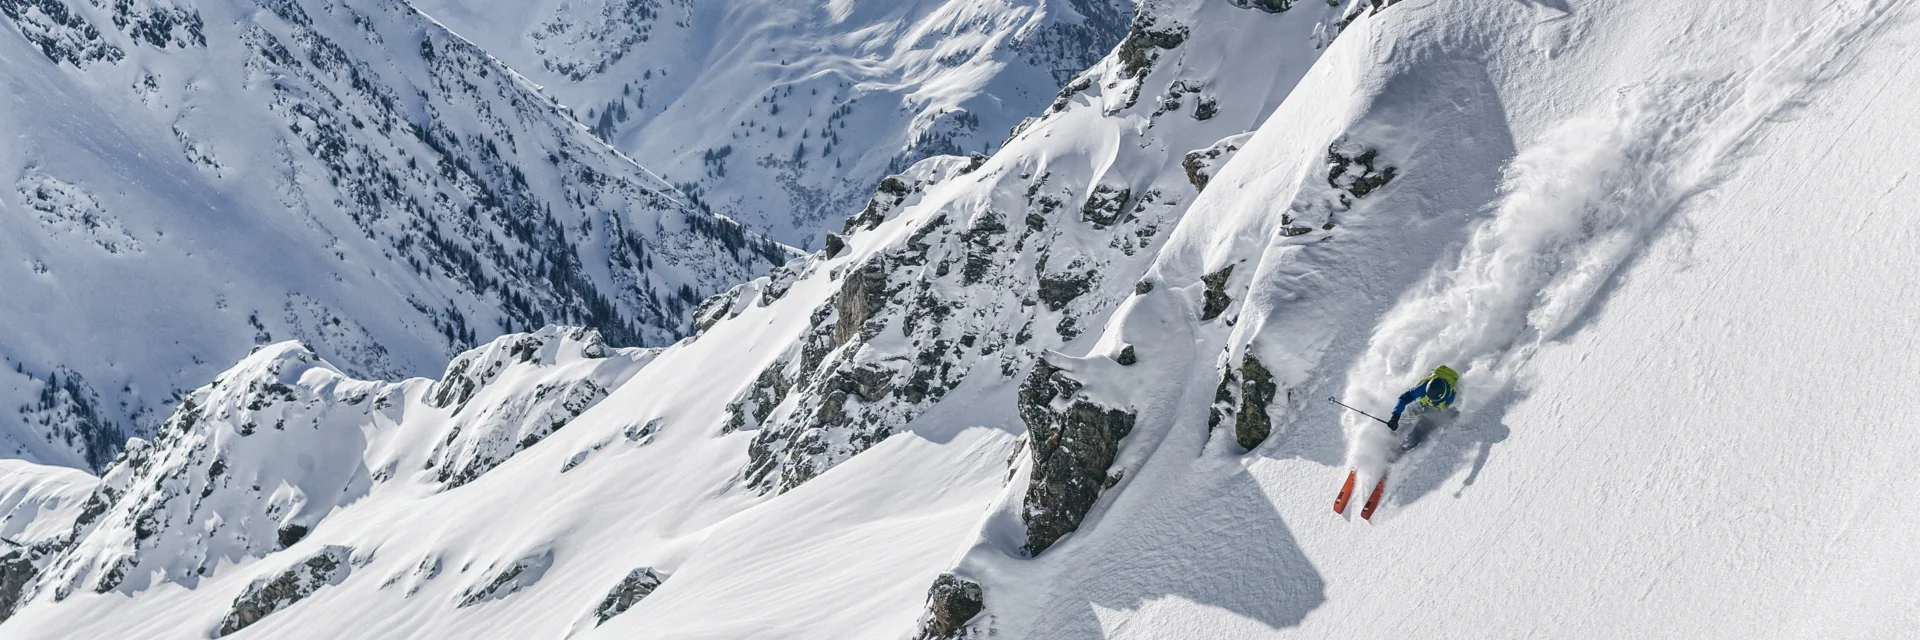 Ein Skifahrer zieht seine Line im Freeridegebiet Silvretta Montafon  | © Silvretta Montafon - Michael Müller